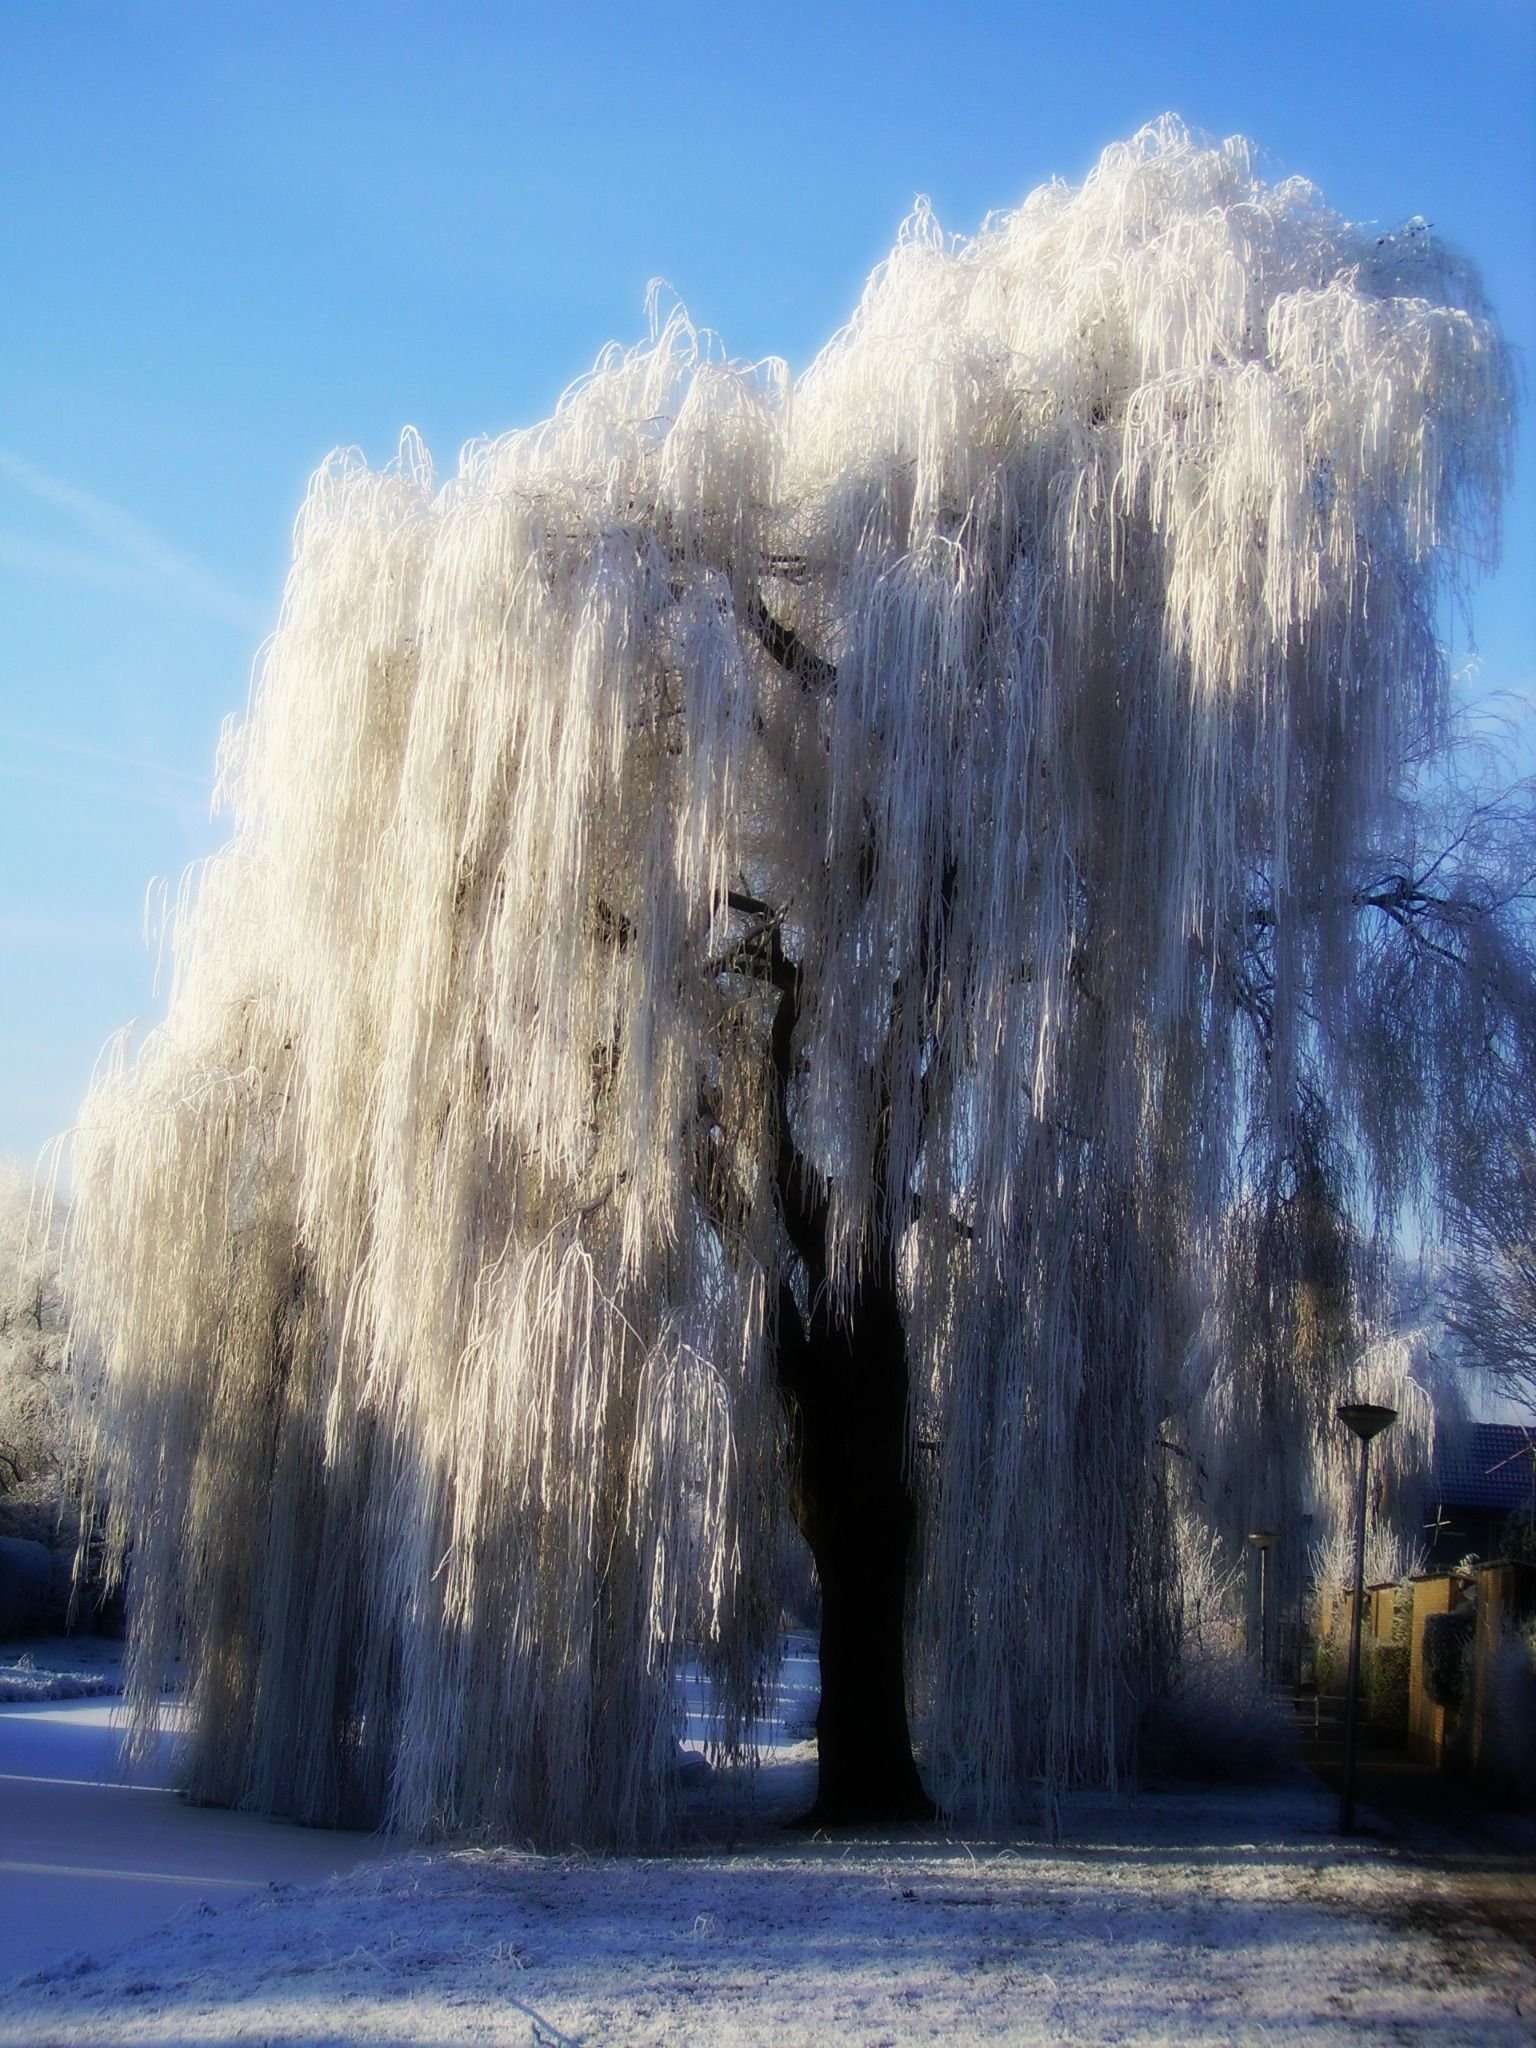 Как выглядит дерево зимой. Плакучая Ива. Плакучая Ива дерево. Weeping Willow/плакучая Ива. Ива белая плакучая.